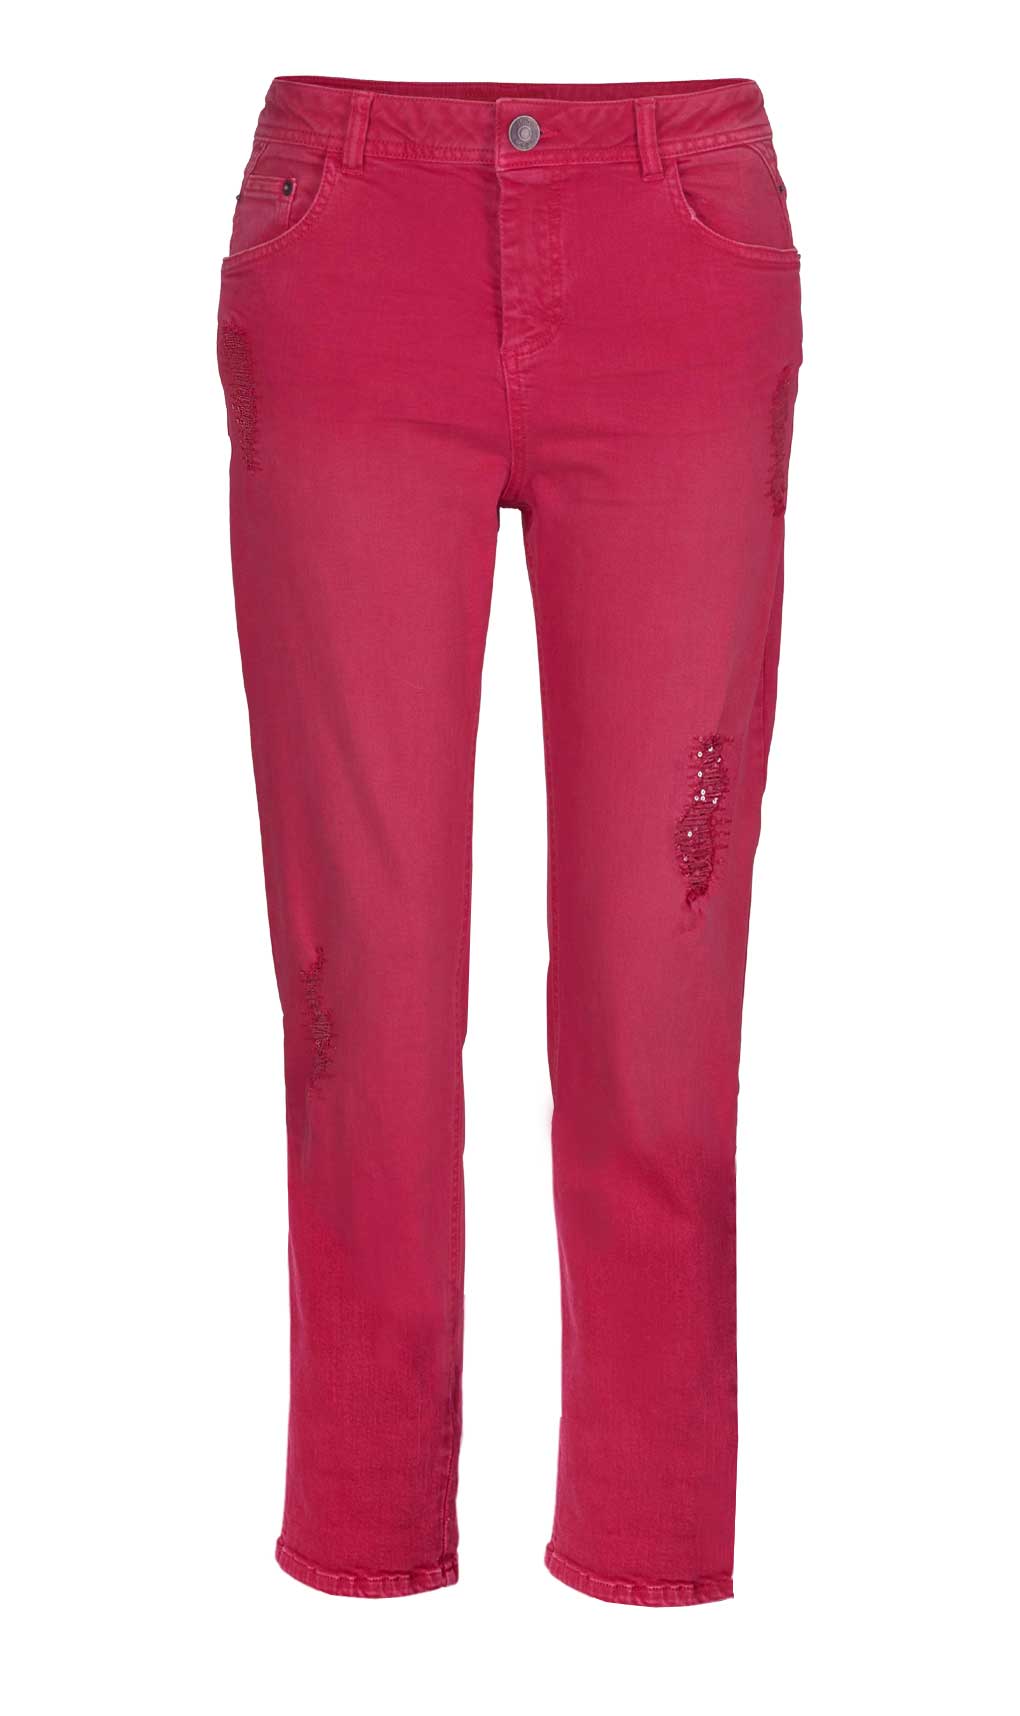 S. Oliver Damen Marken-Jeans mit Pailletten, rot